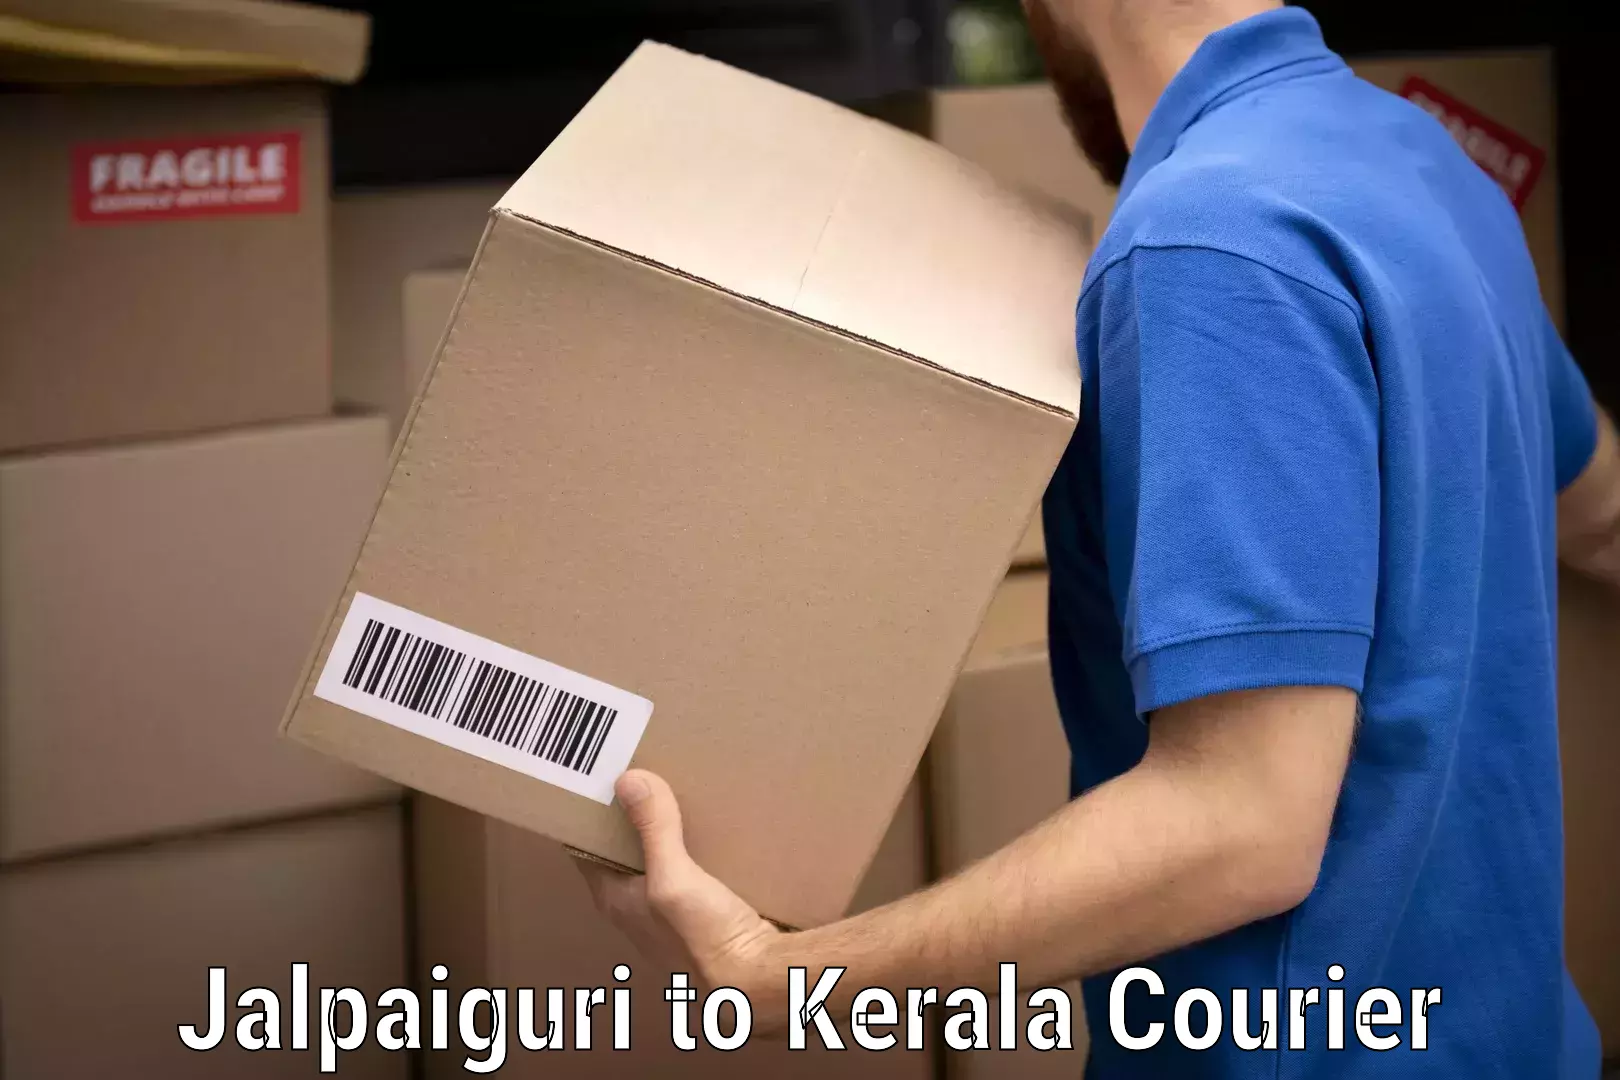 Personalized moving service Jalpaiguri to Kerala